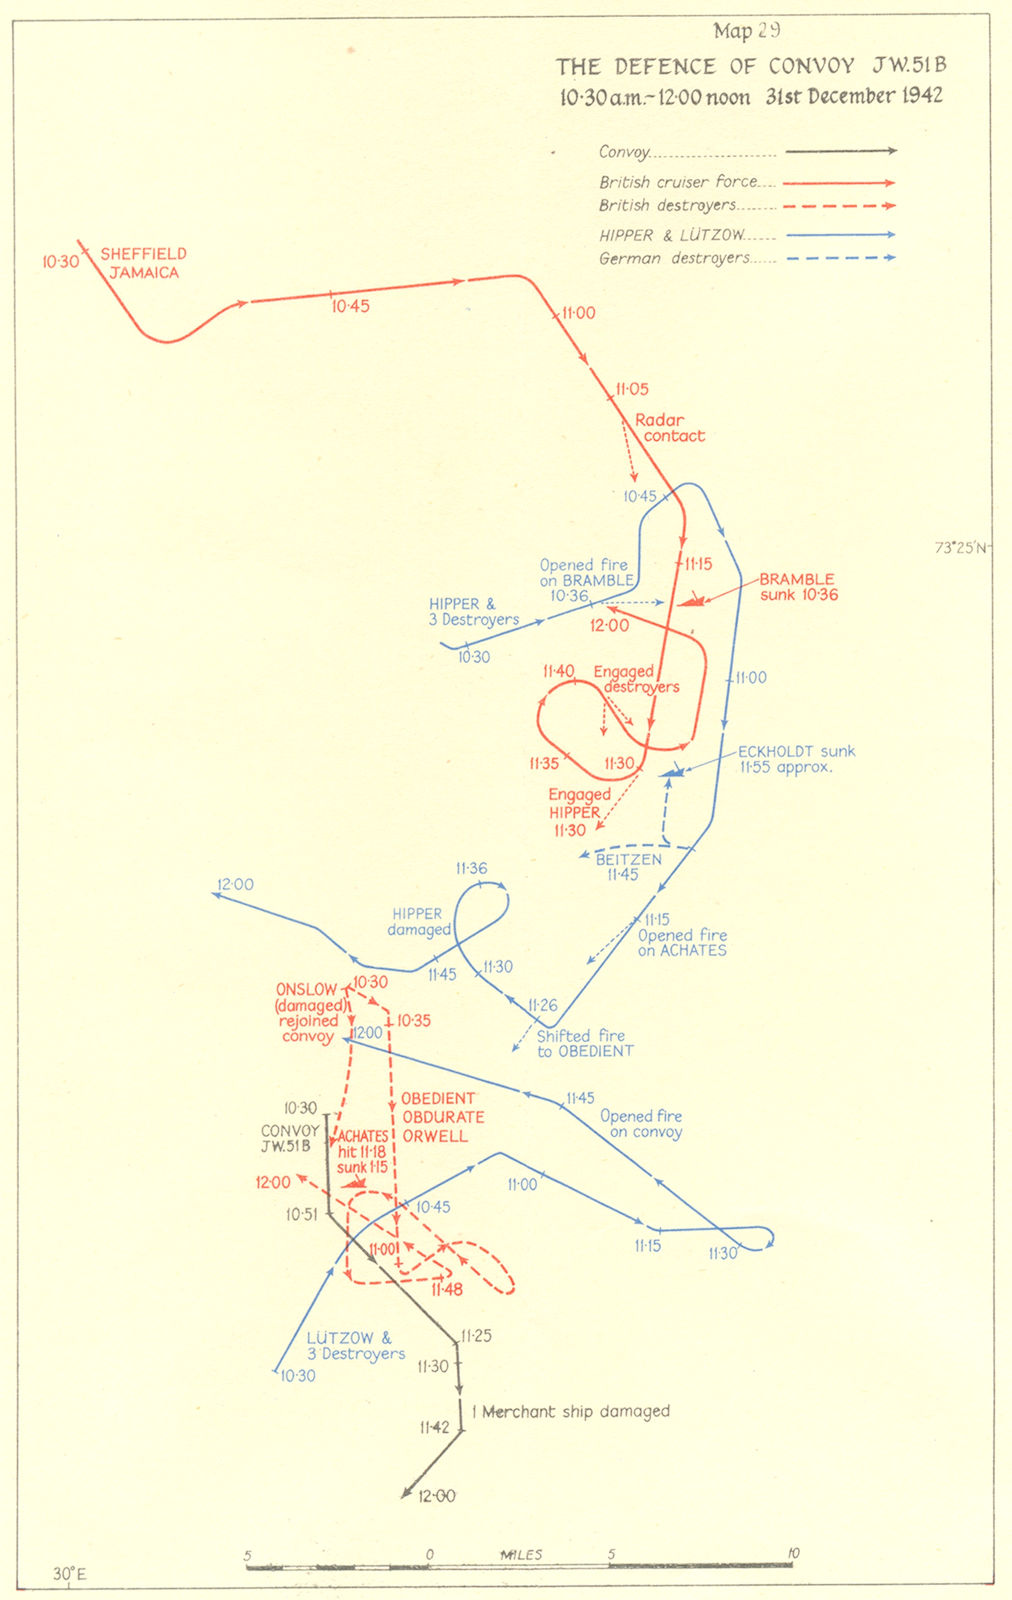 ARCTIC. Defence of Convoy JW 51B 10. 30 am-12. 00 noon 31st Dec 1942 1956 map